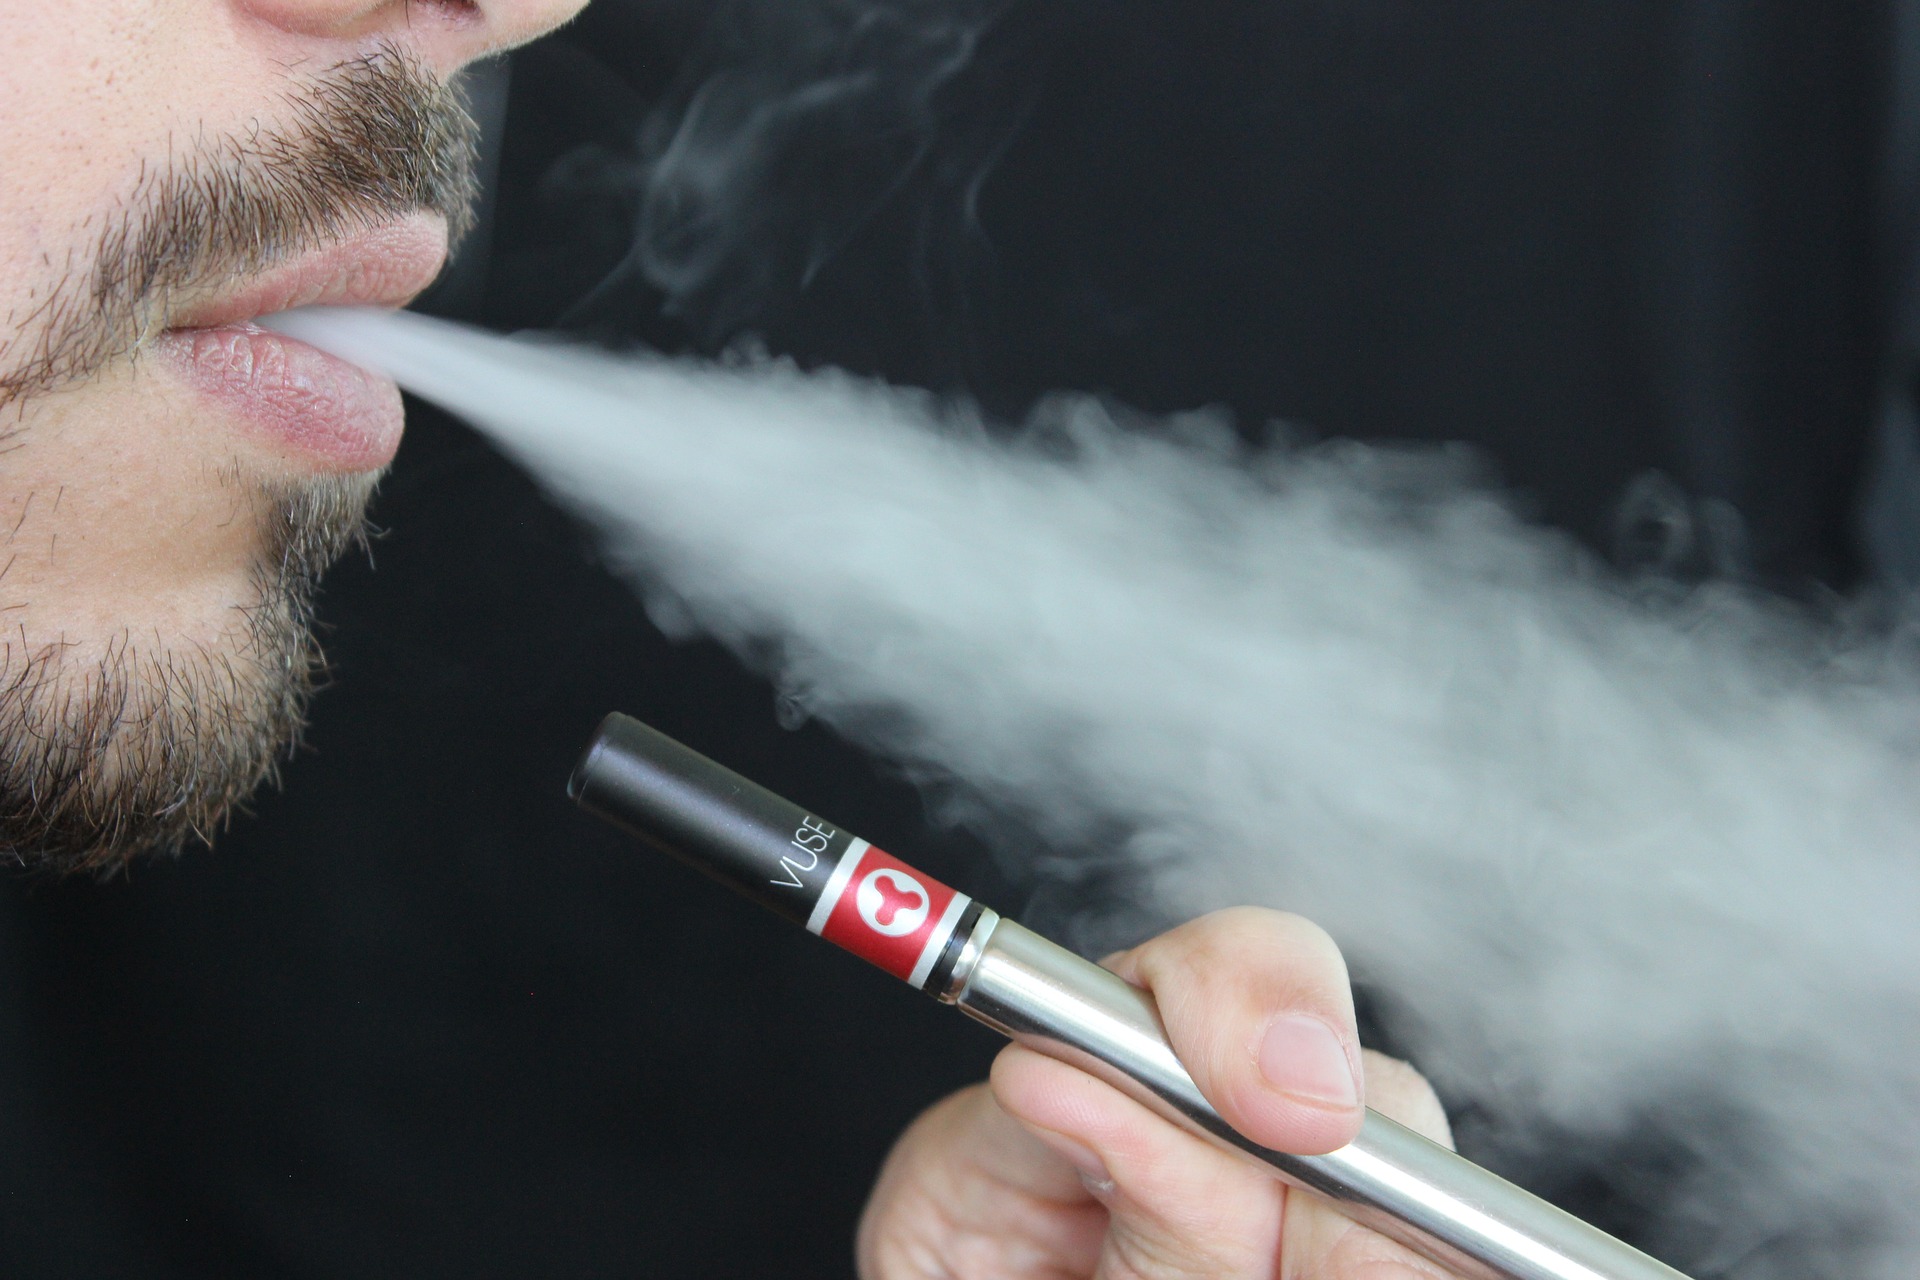 Az e-cigaretta is jelentősen rontja a termékenységet a férfiak esetében